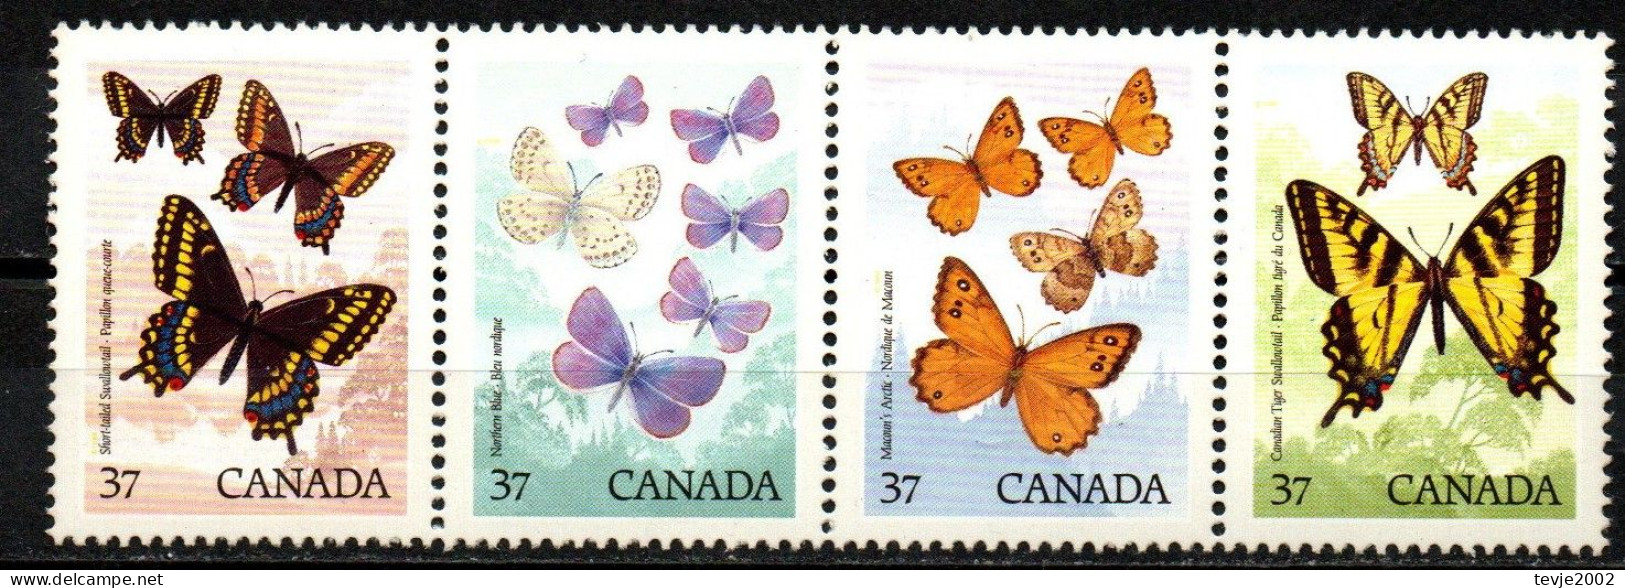 Kanada Canada 1988 - Mi.Nr. 1090 - 1093 - Postfrisch MNH - Tiere Animals Schmetterlinge Butterflies - Mariposas